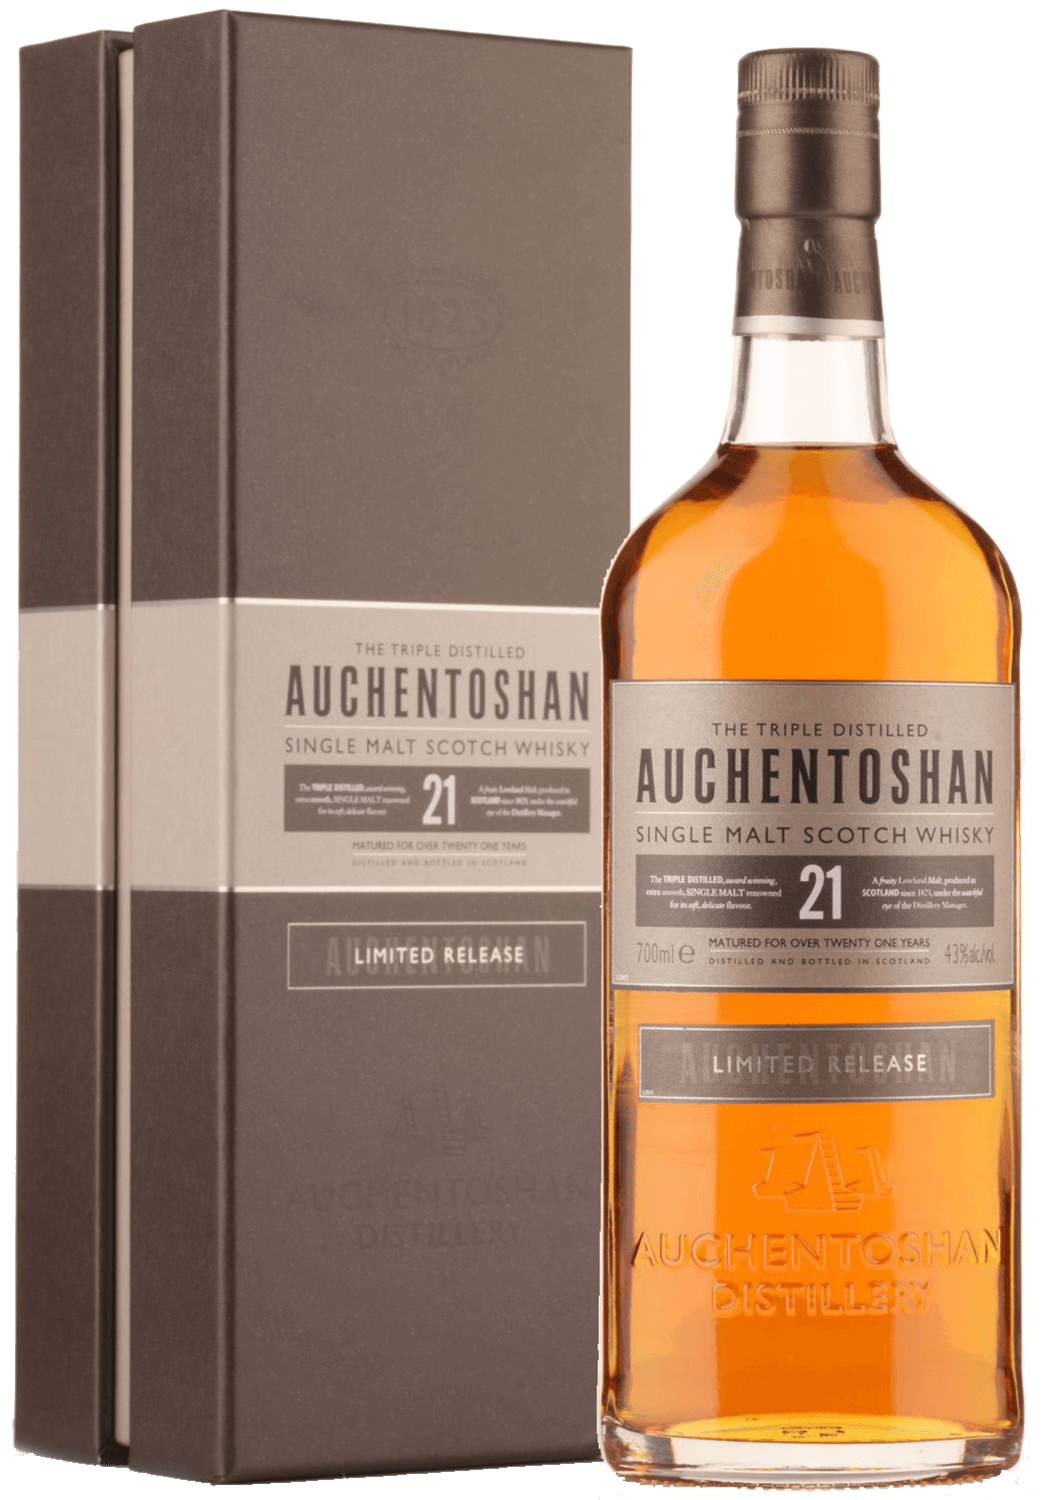 Auchentoshan Single Malt Scotch Whisky 21 y.o. (gift box) auchentoshan american oak single malt scotch whisky gift box